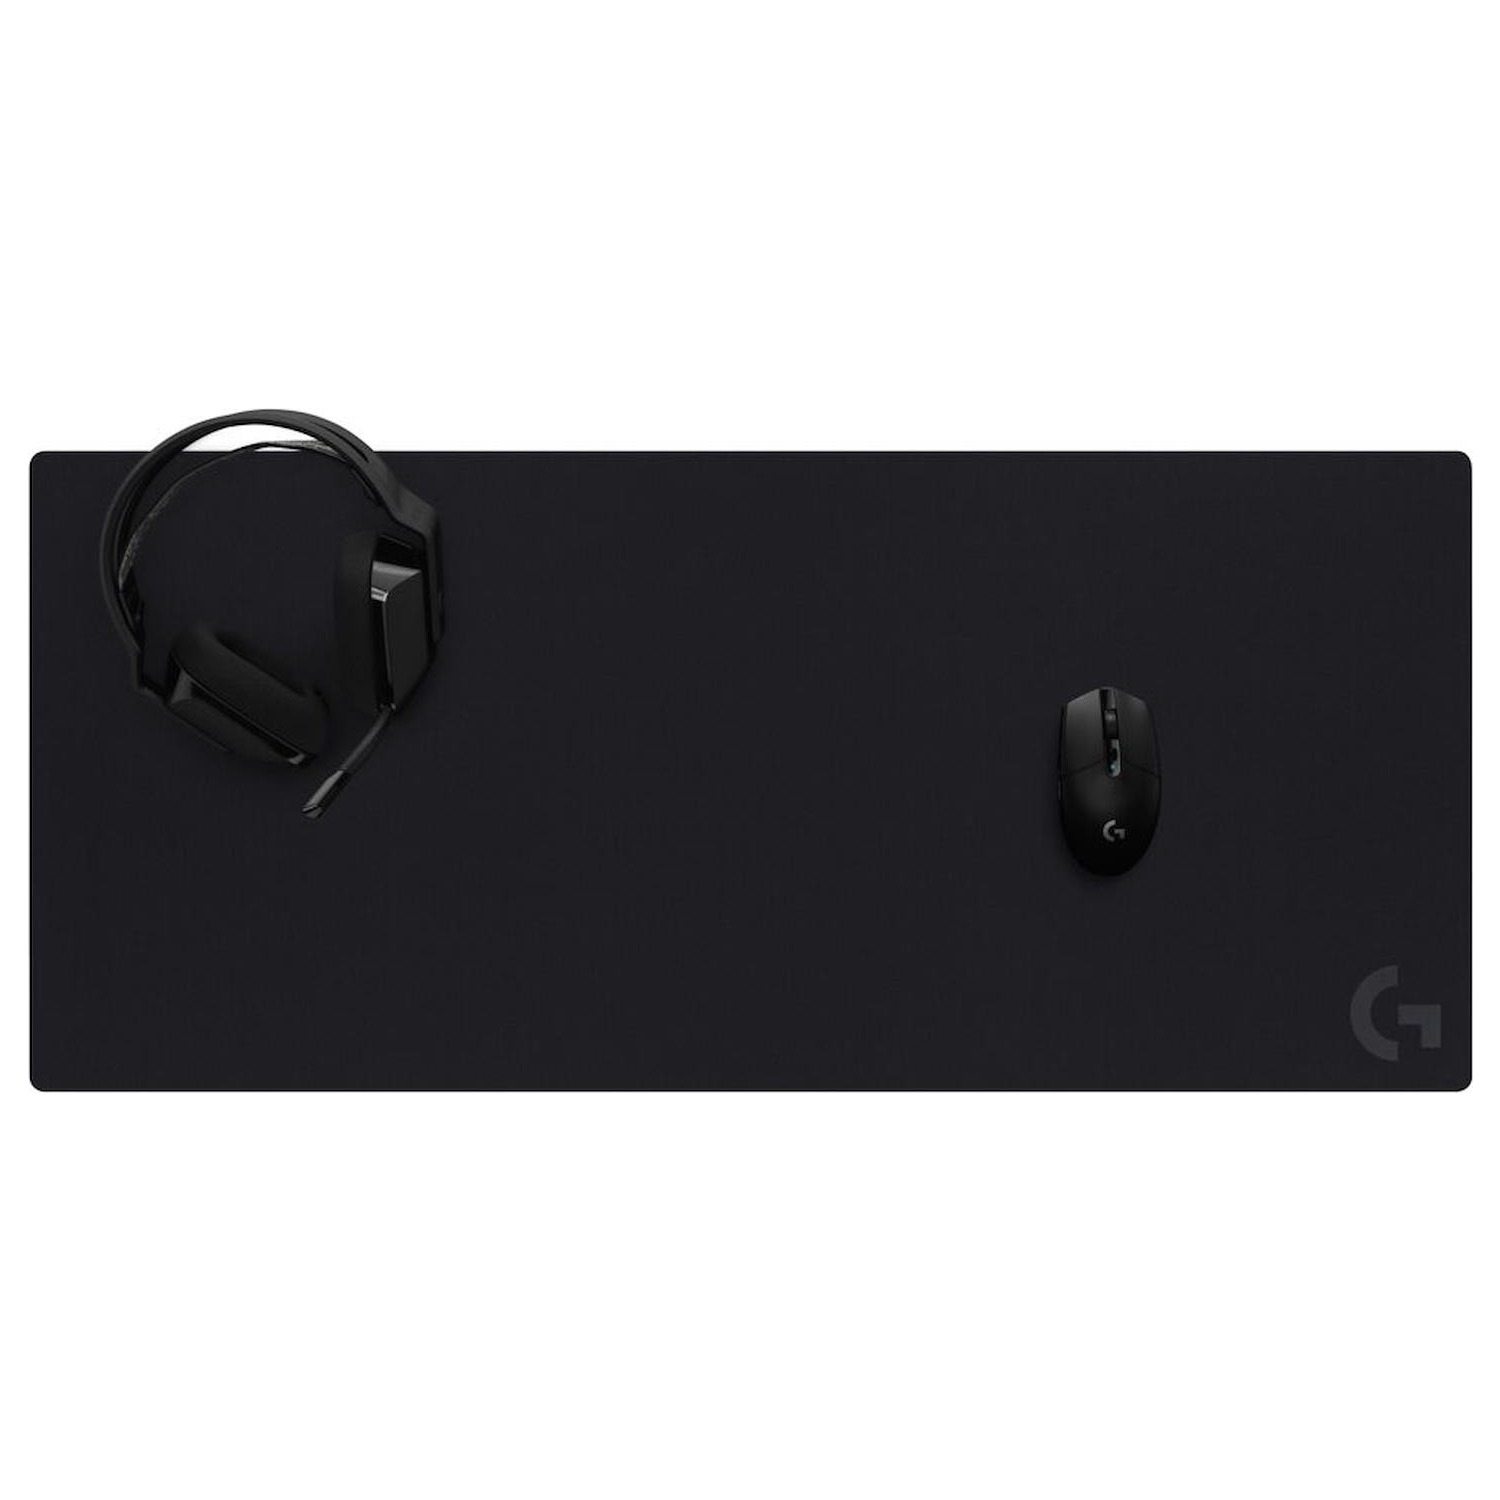 Immagine per Mouse Pad Logitech G840 gaming nero da DIMOStore